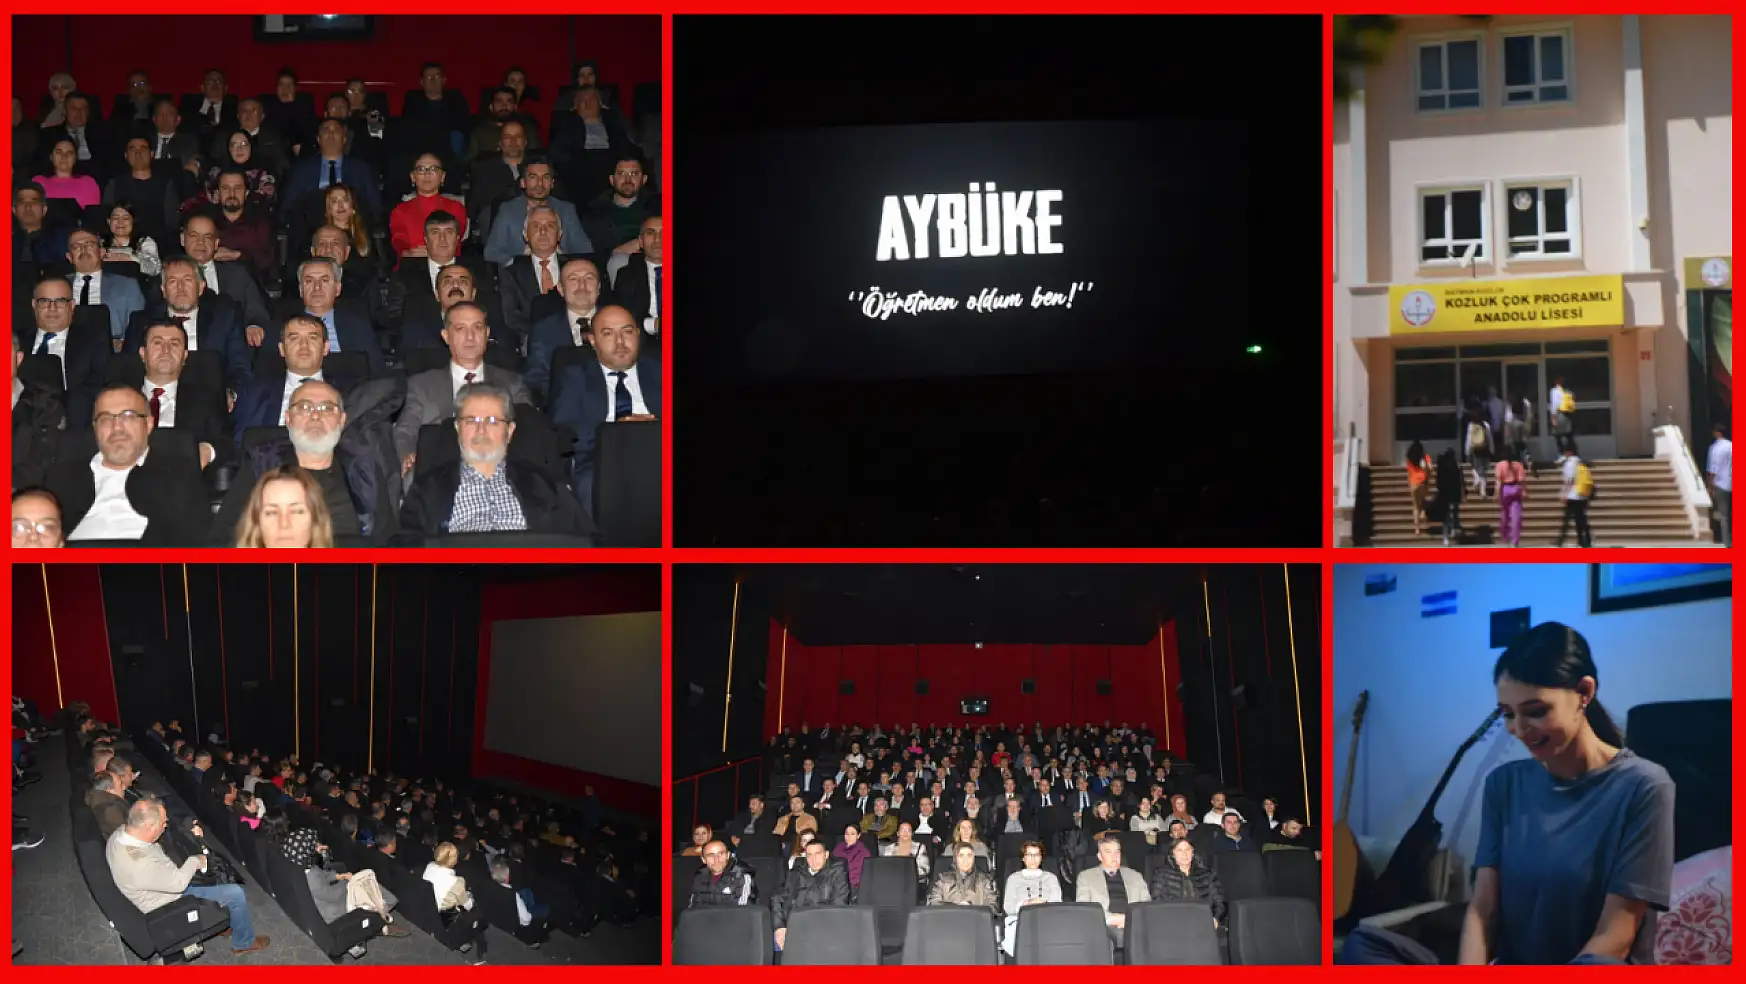 Konya'da 'Aybüke: Öğretmen Oldum Ben' Filmi İzlendi!